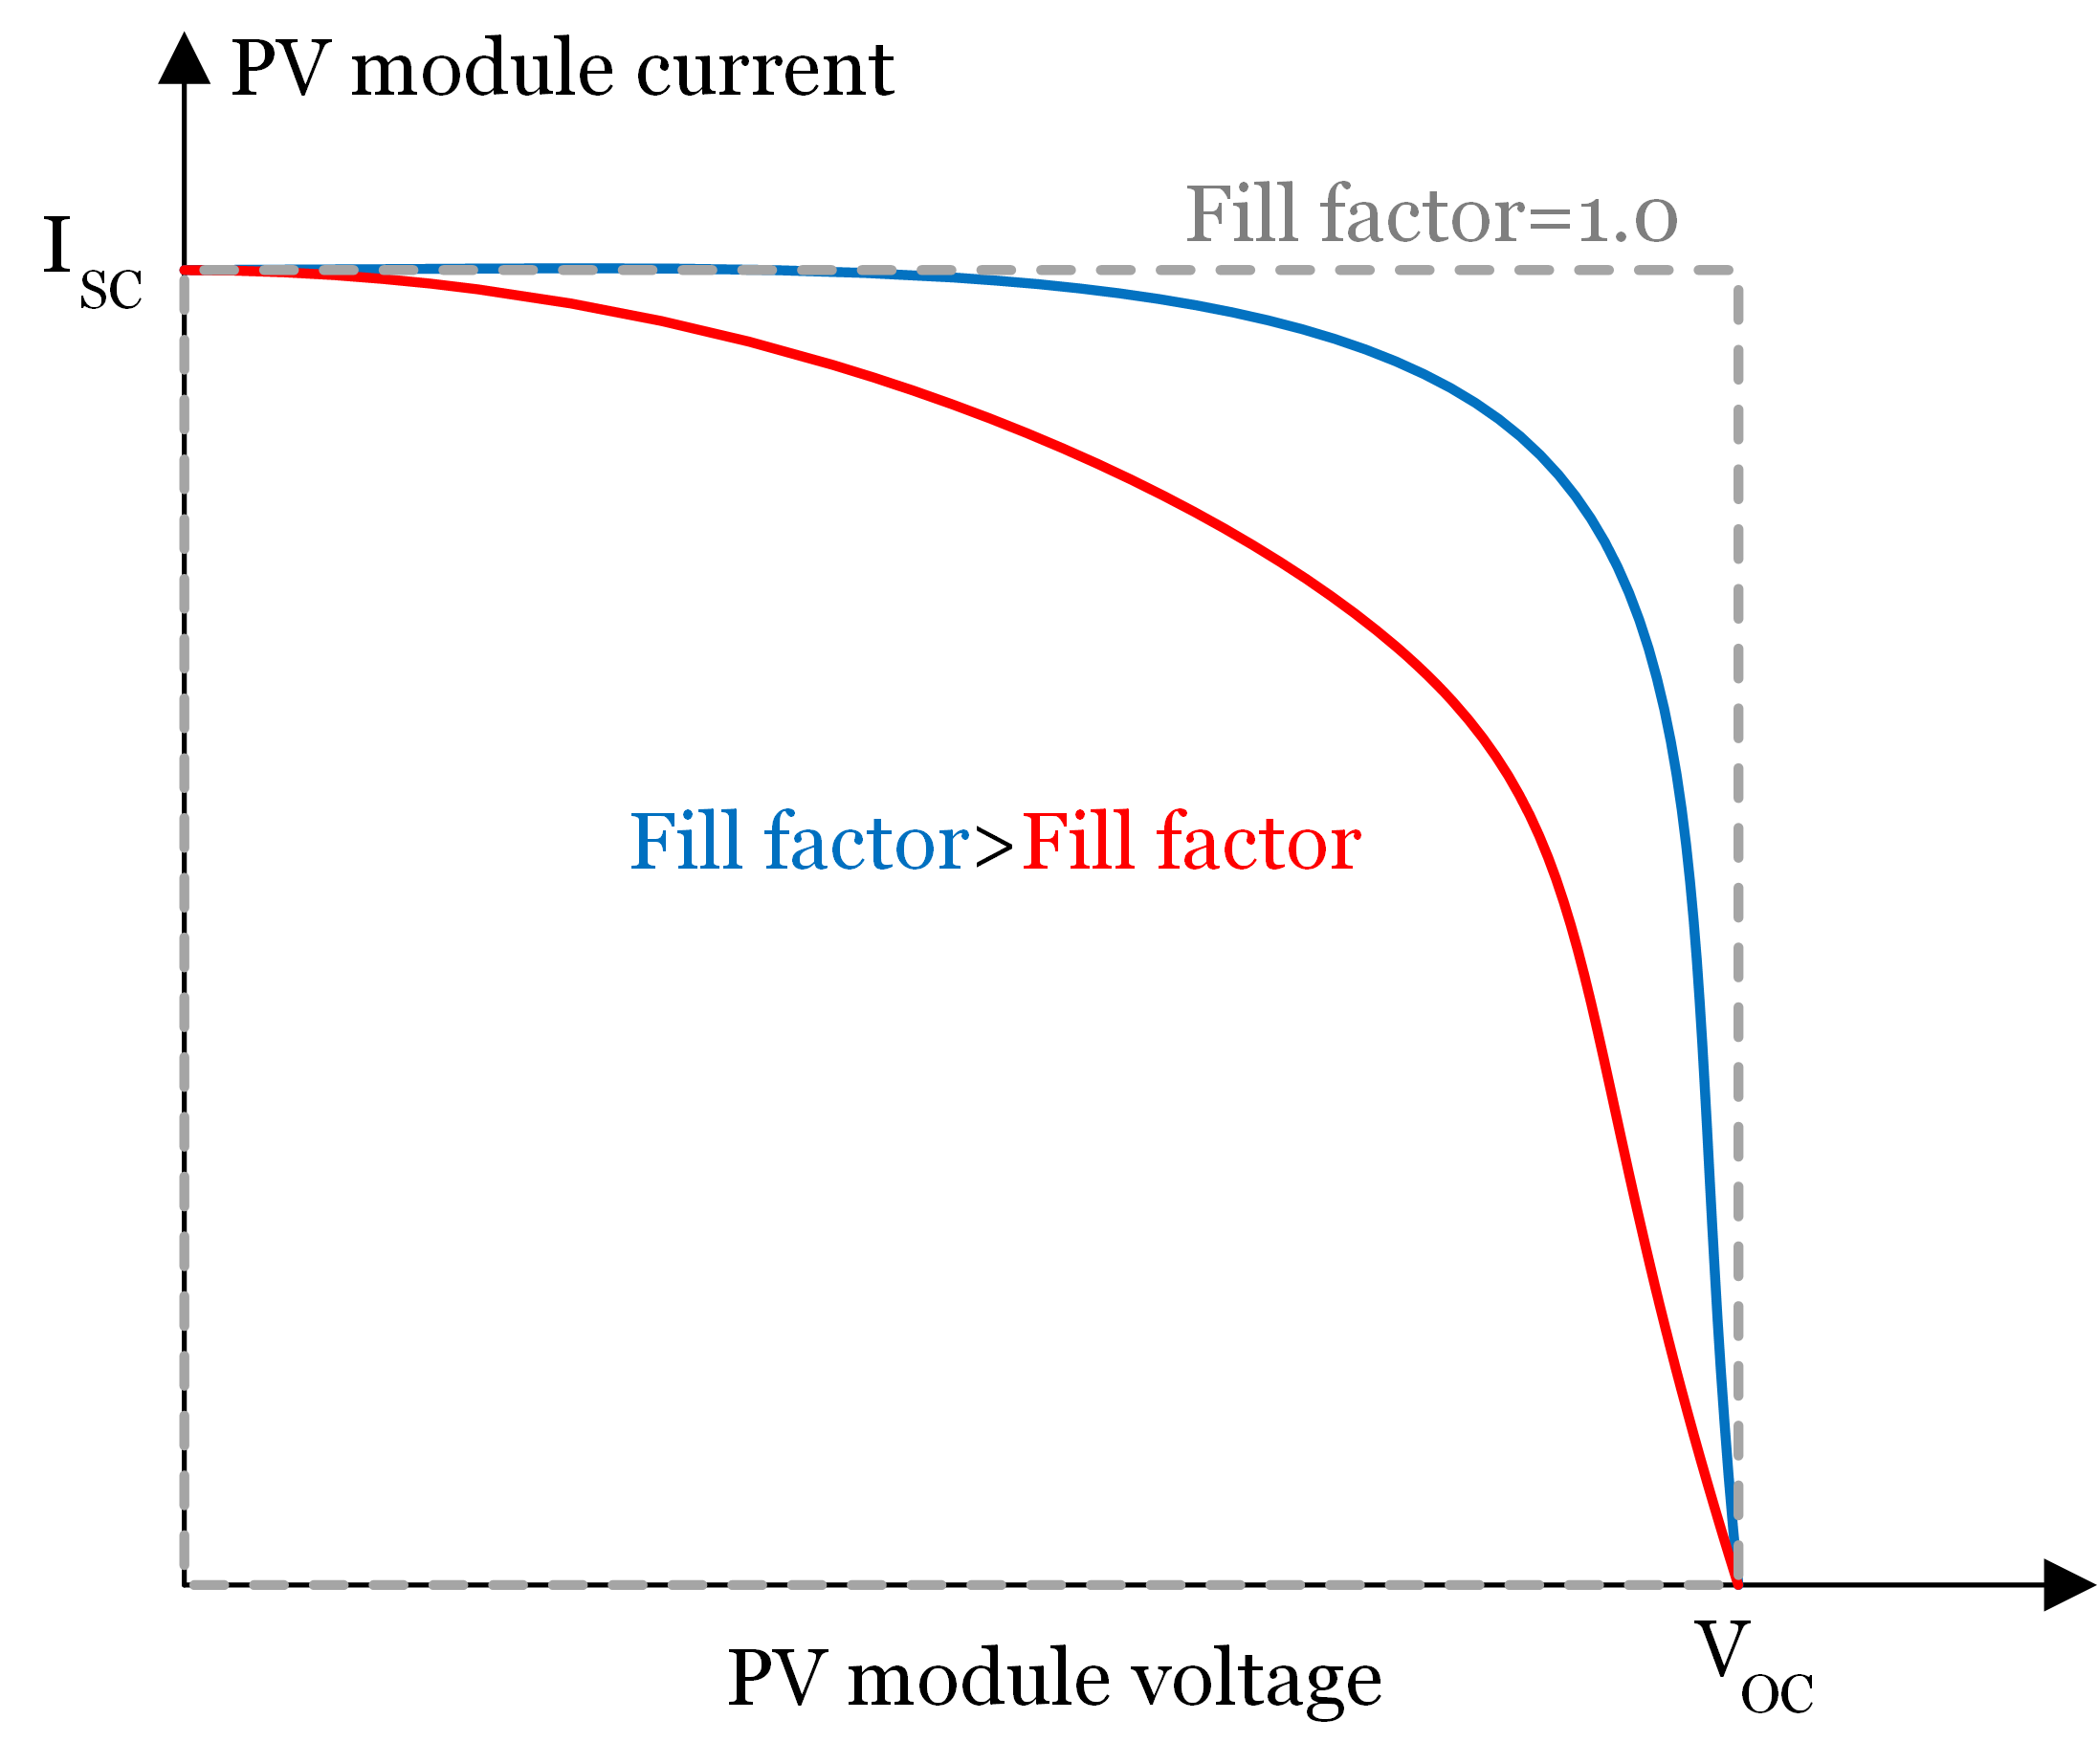 ضریب fill factor بزرگتر به معنای تولید بیشتر پنل خورشیدی در شرایط مختلف آب و هوایی است.